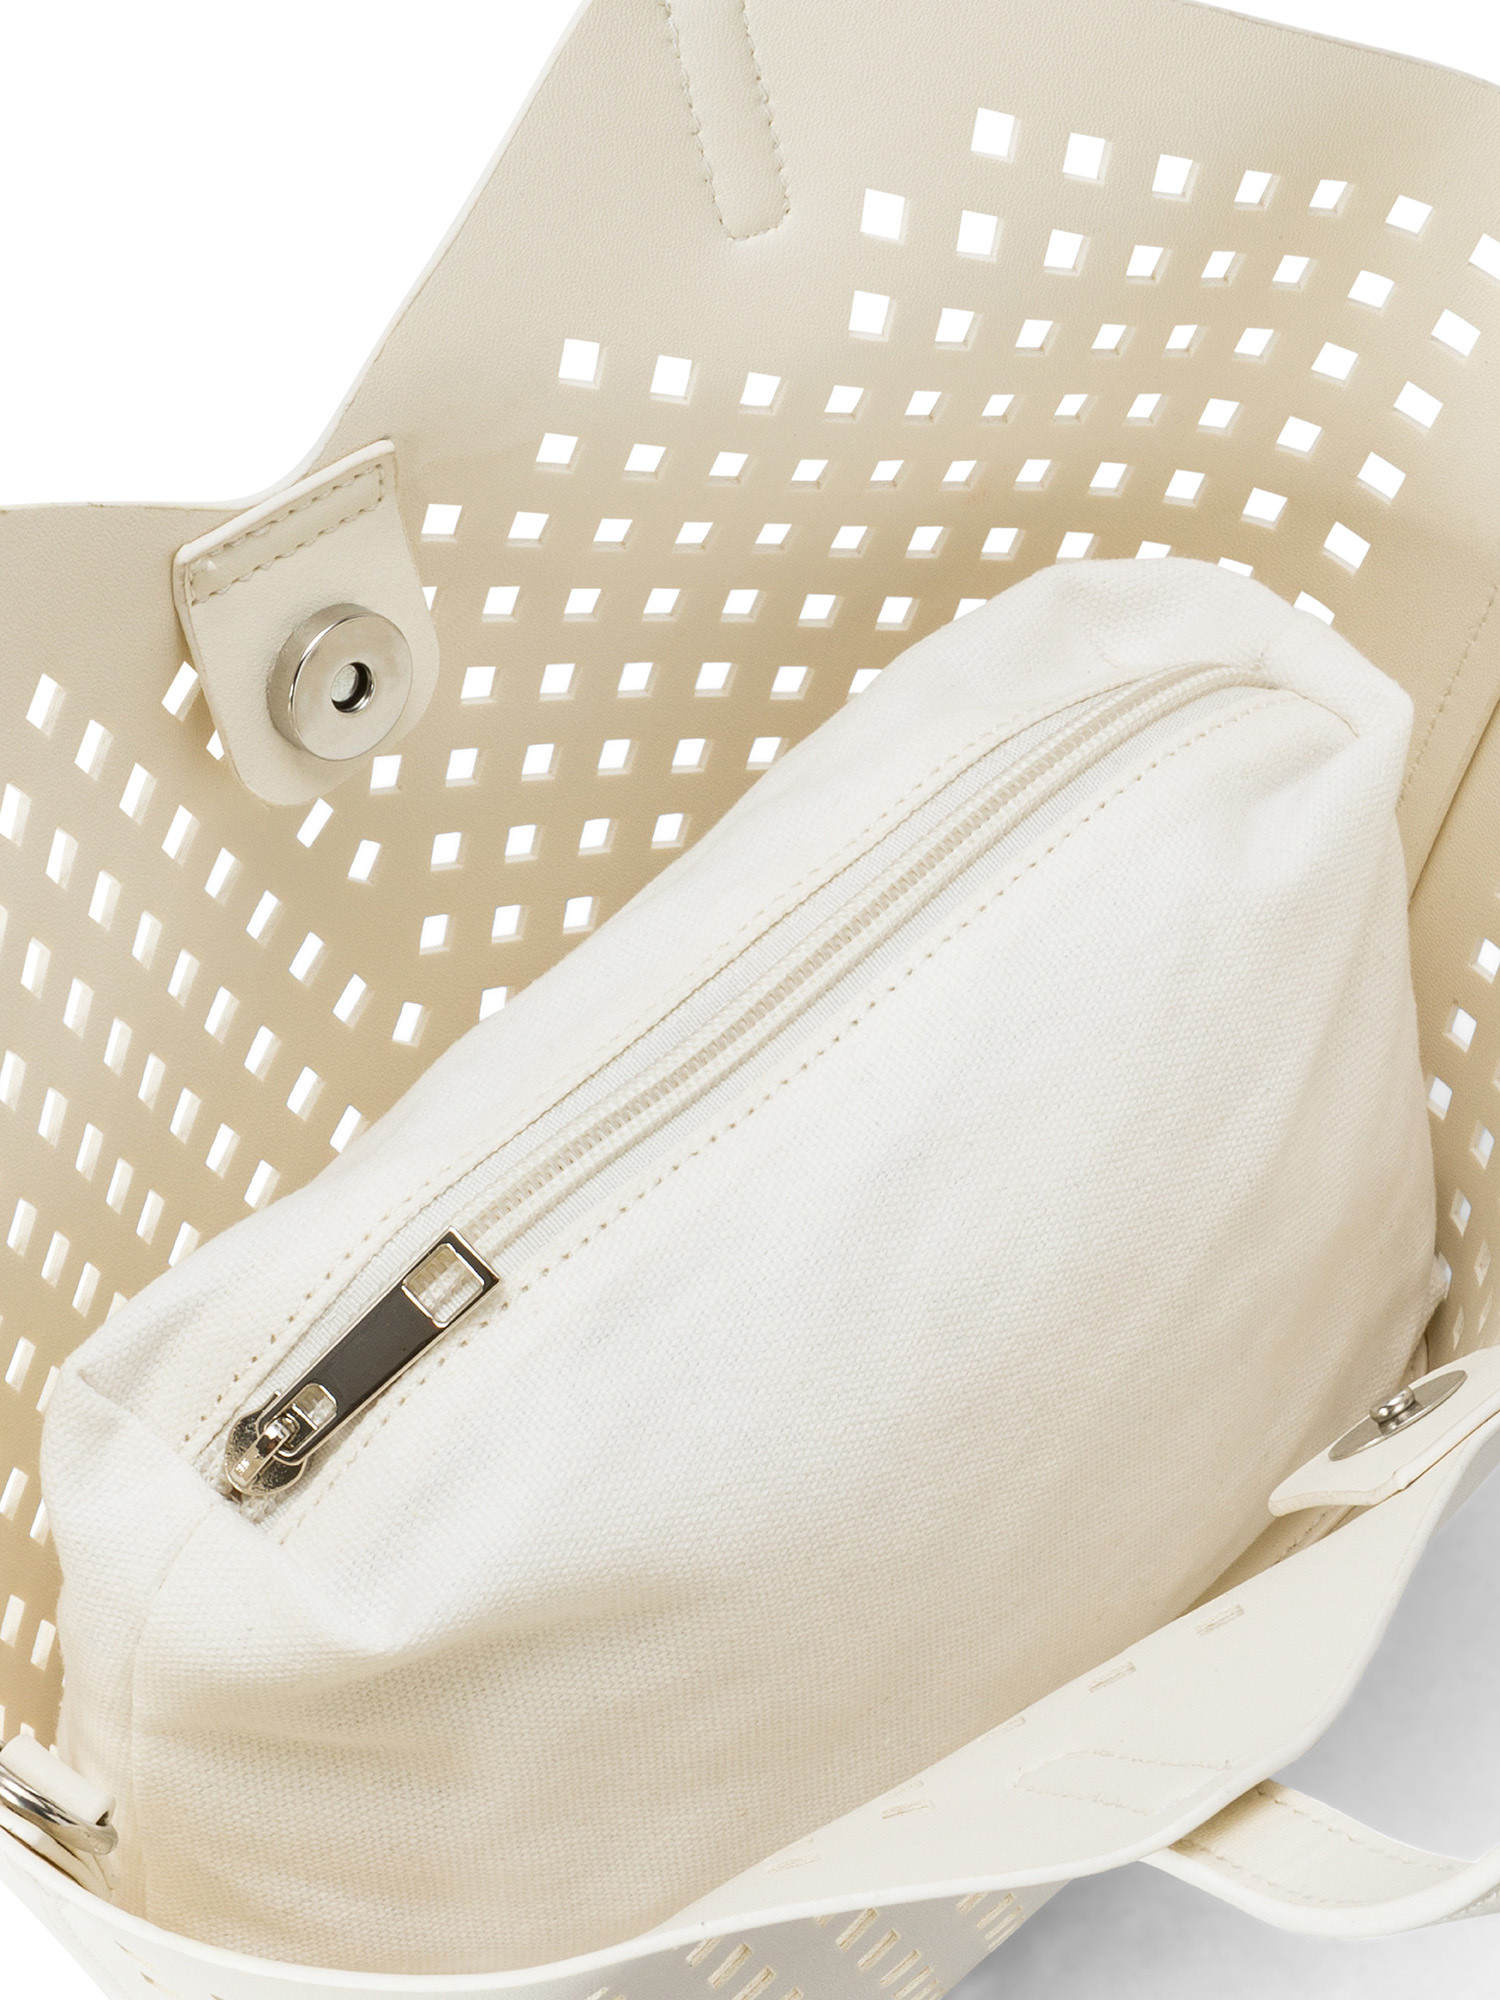 Koan - Shopping bag traforata, Bianco, large image number 2